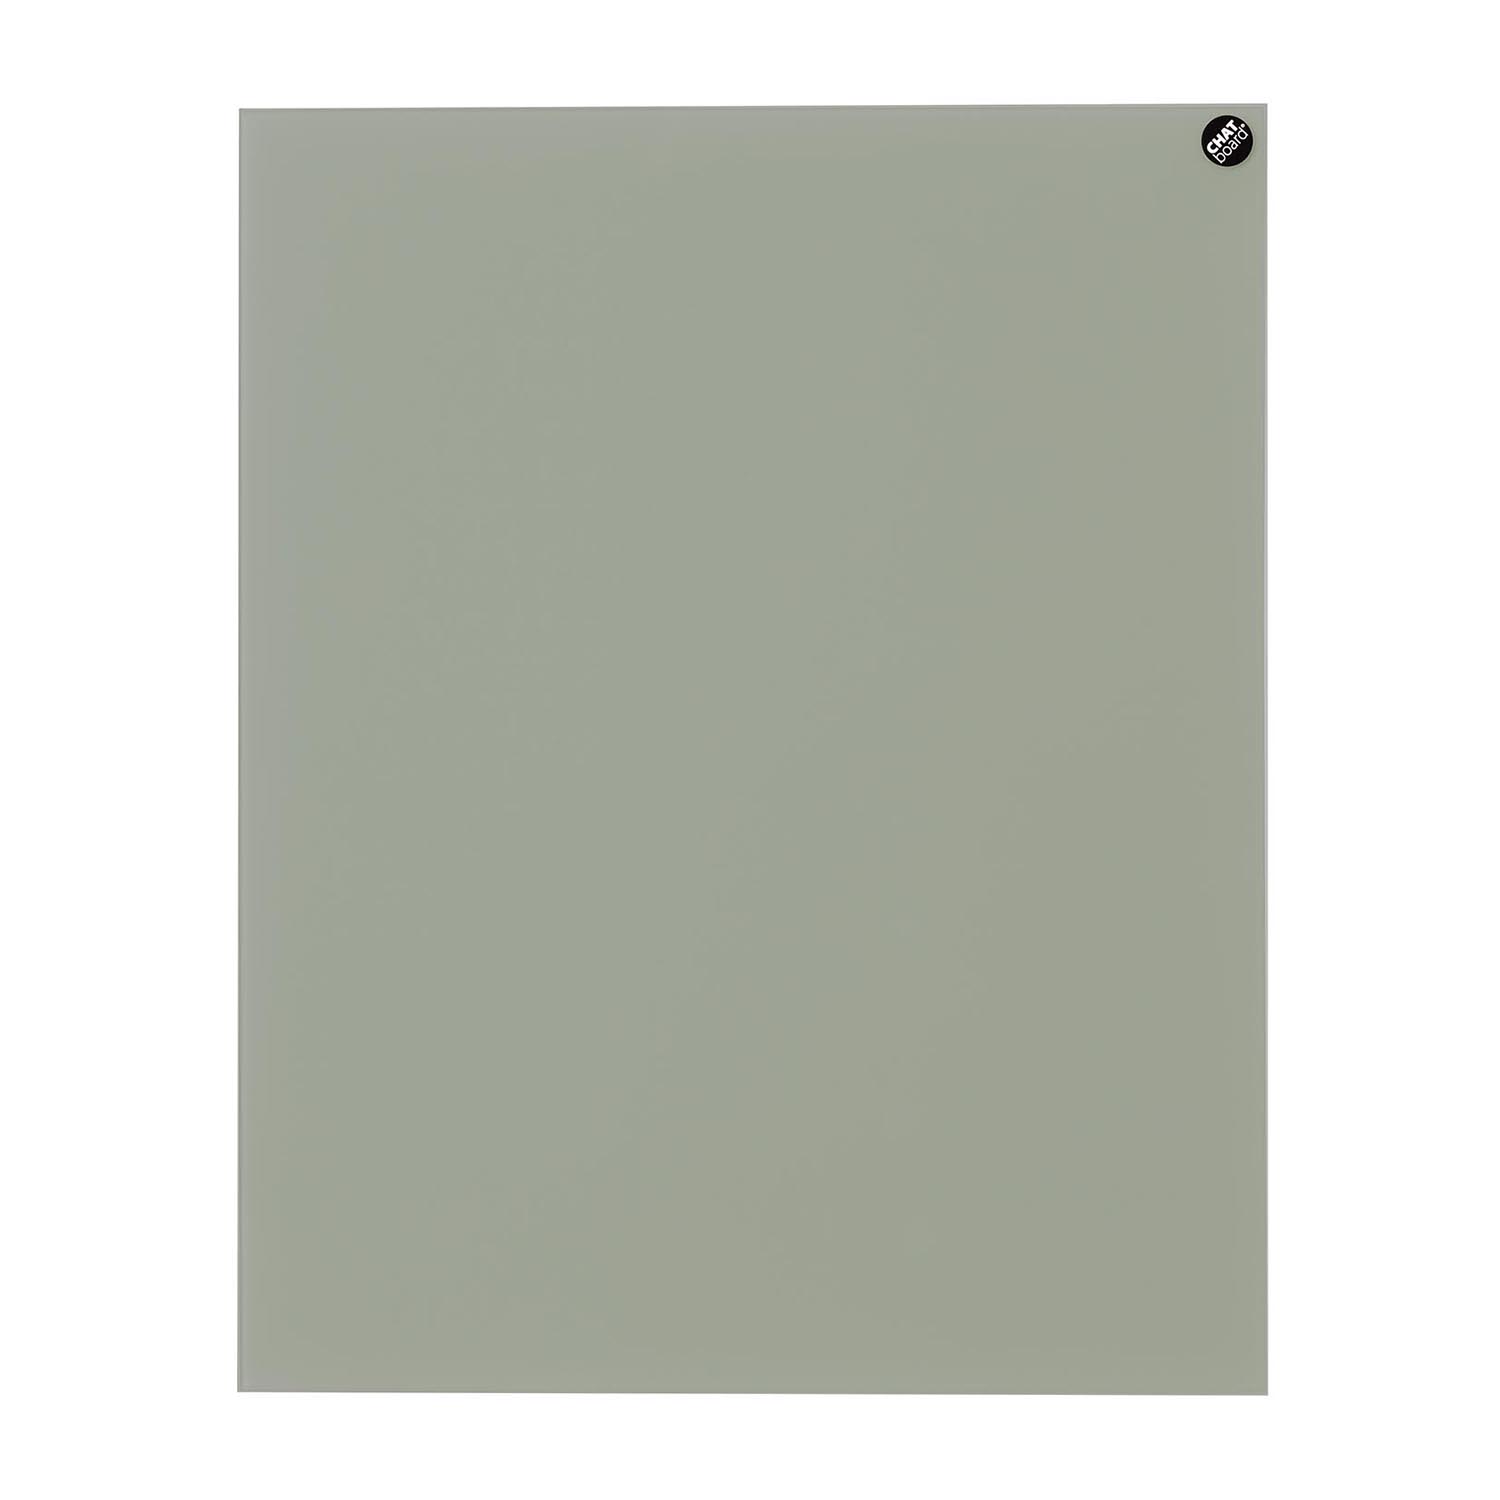 Elements Magnettafel, Grösse 120 x 90 cm, Ausrichtung vertikal, Glas pure white 14 mtpw von Chat Board